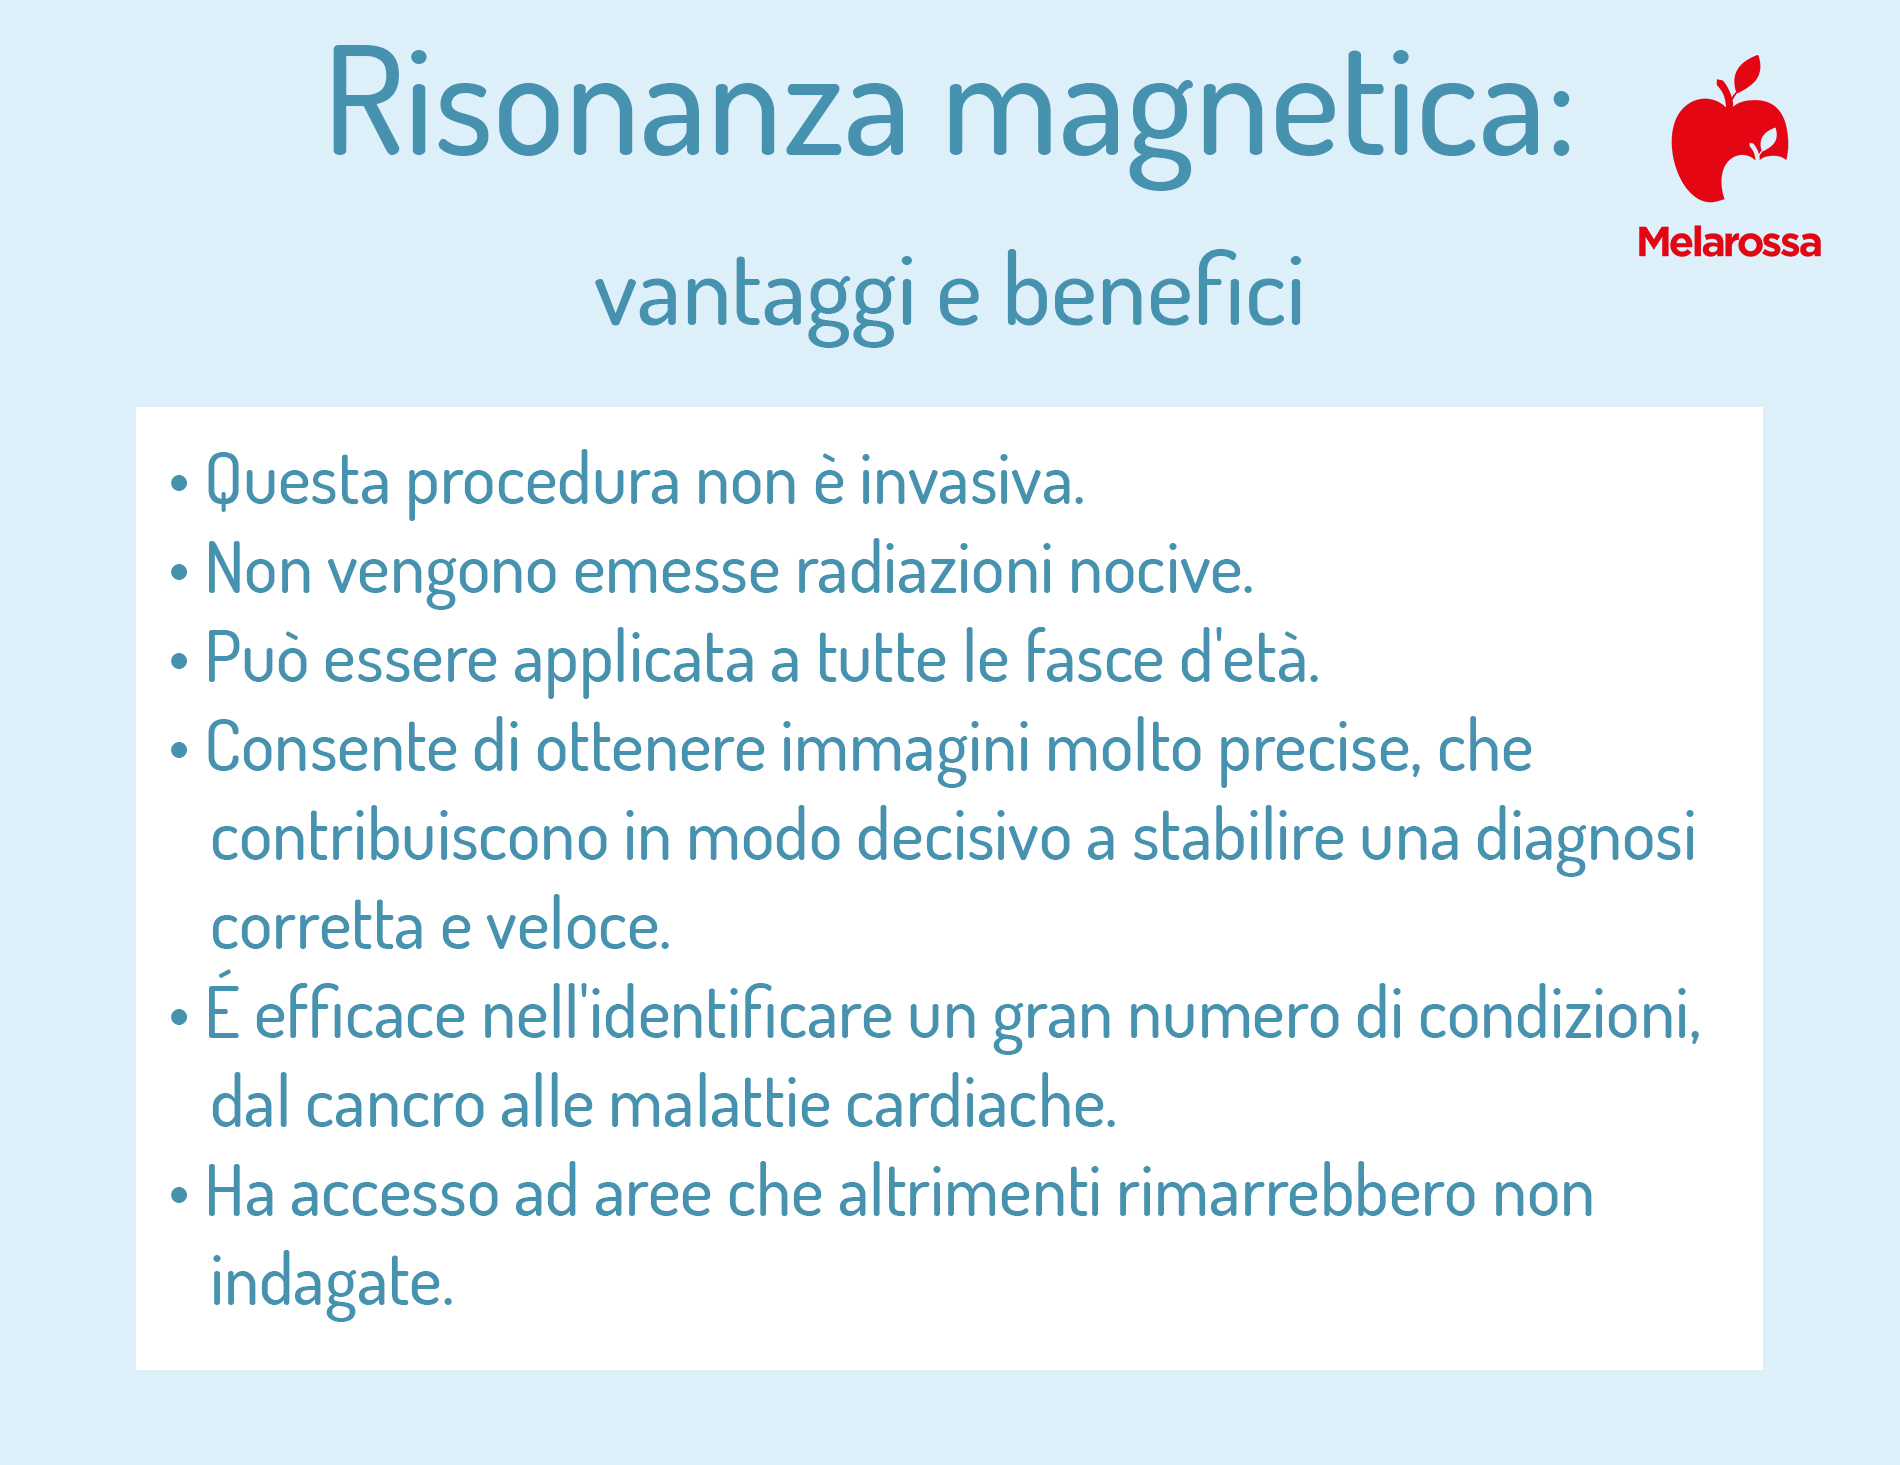 risonanza magnetica: benefici